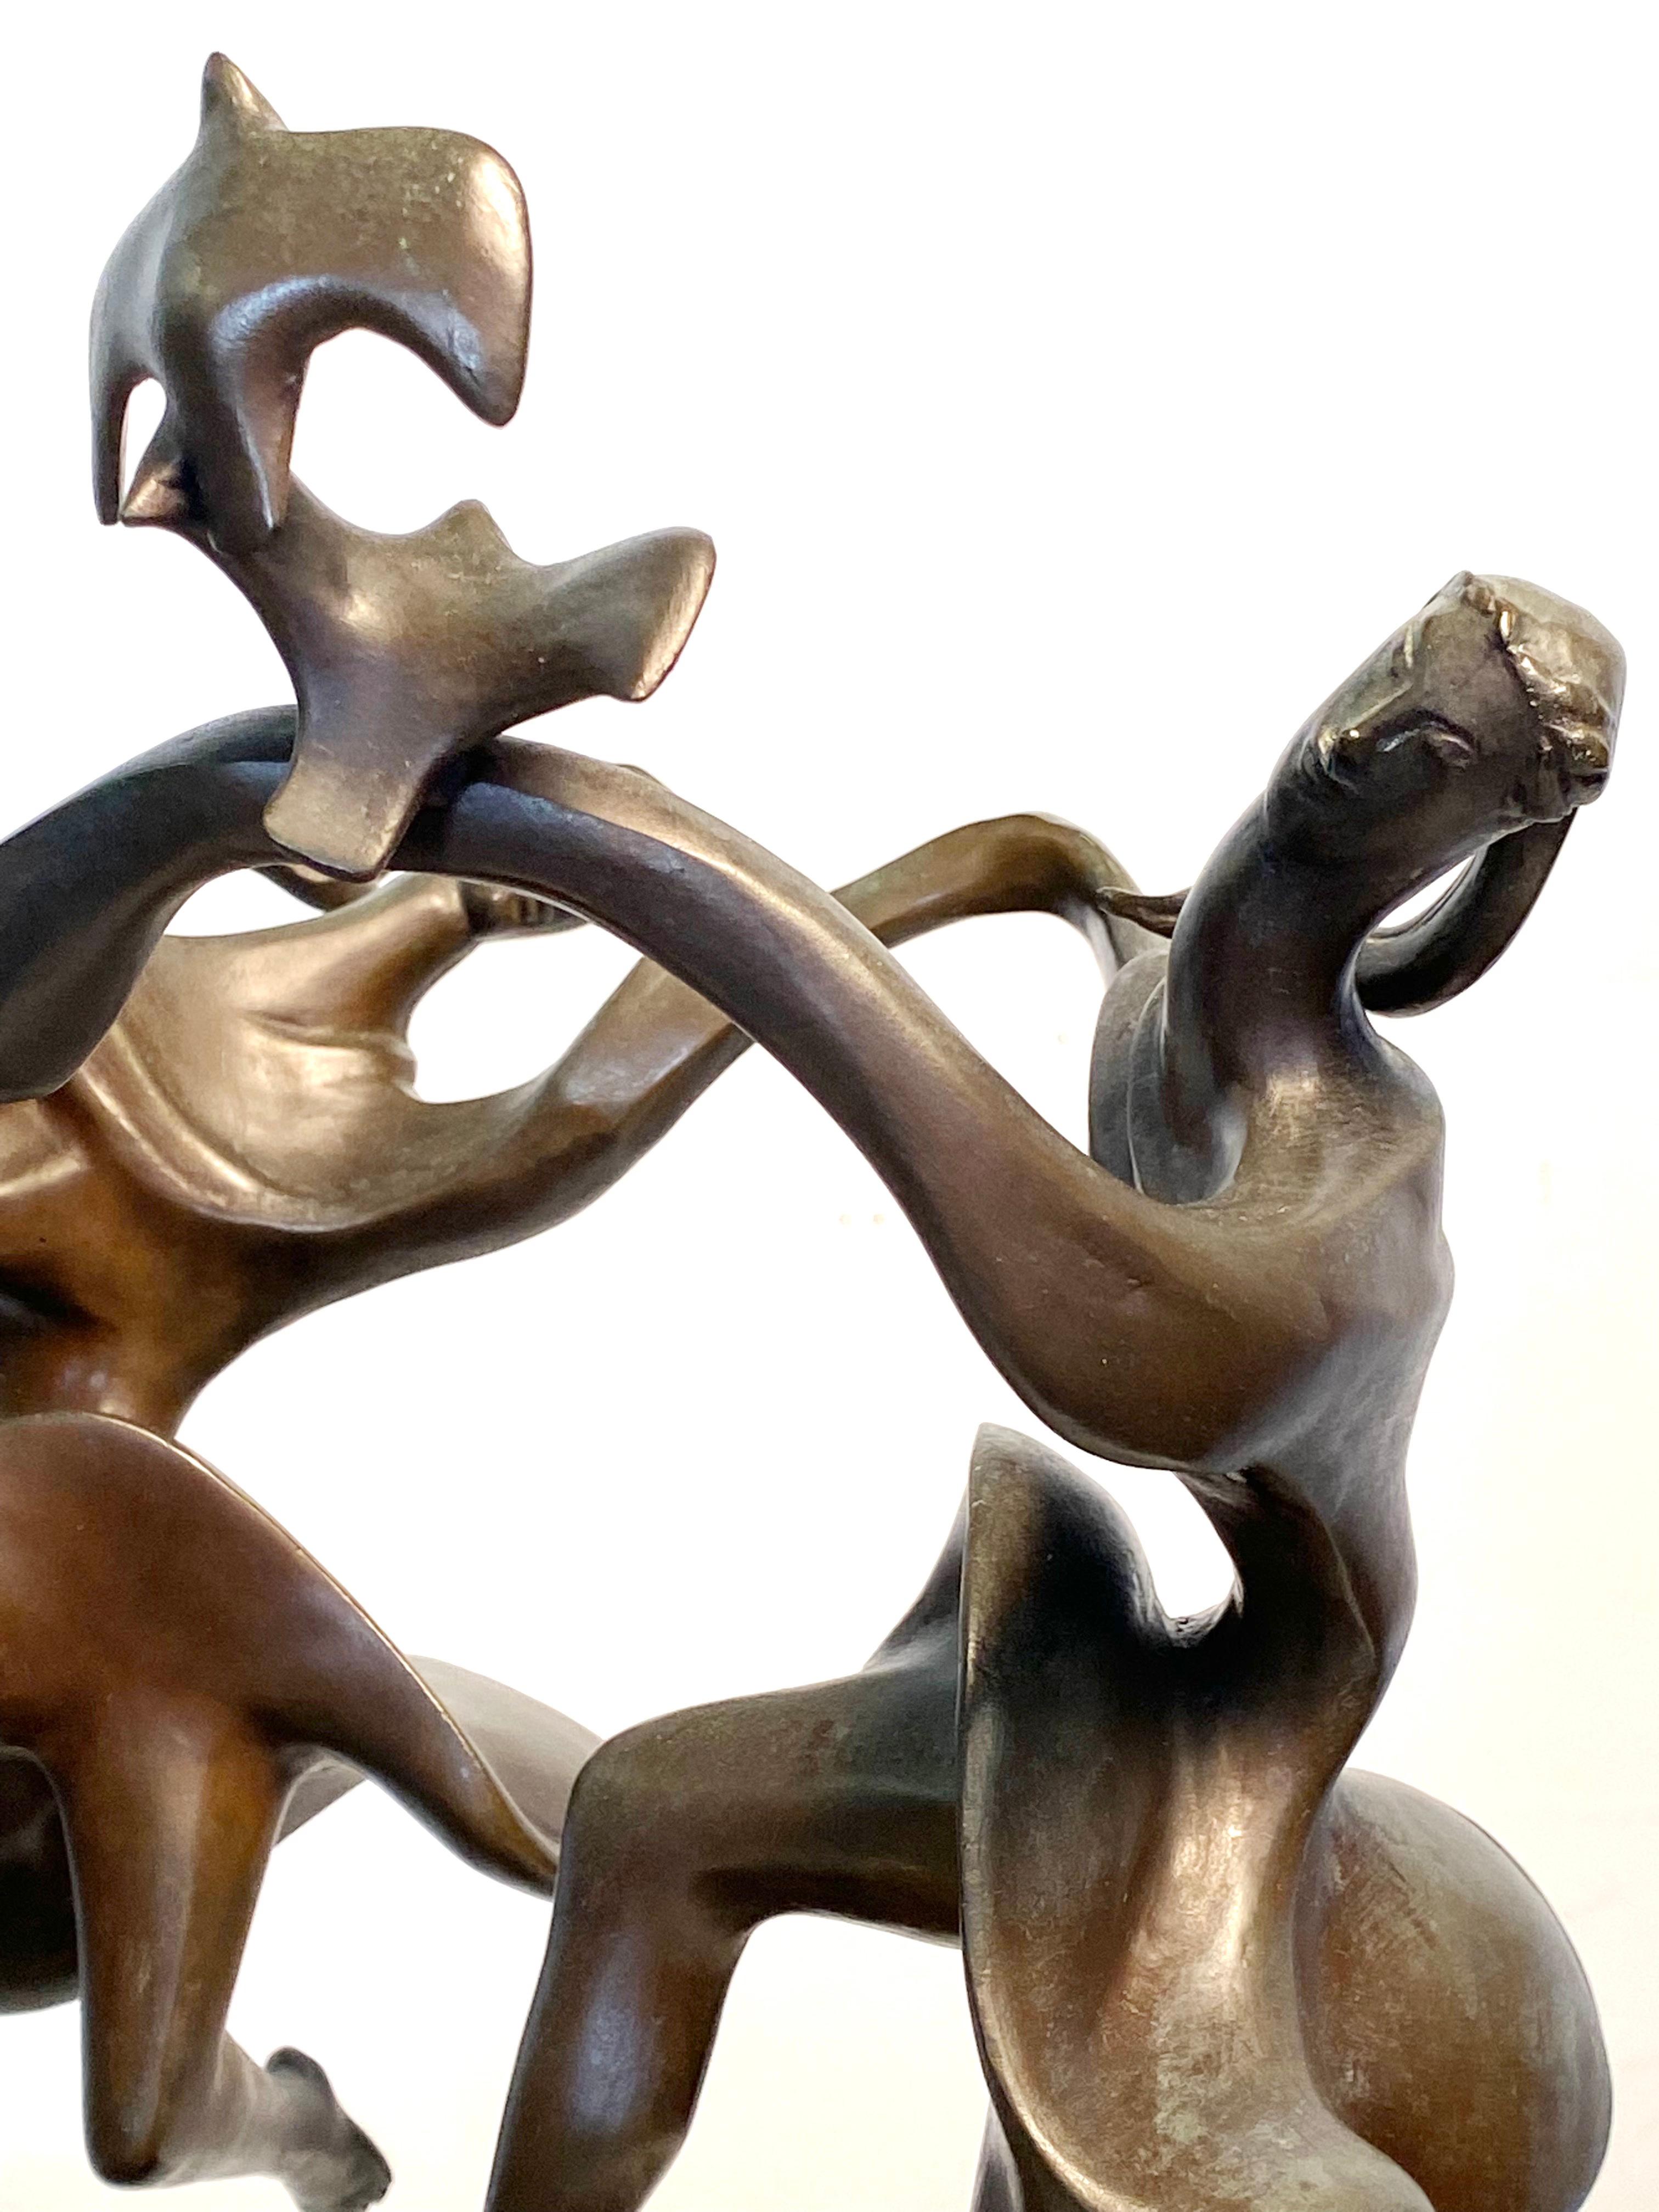 Joy of Life sculpture - American Modern Sculpture by Albert Wein